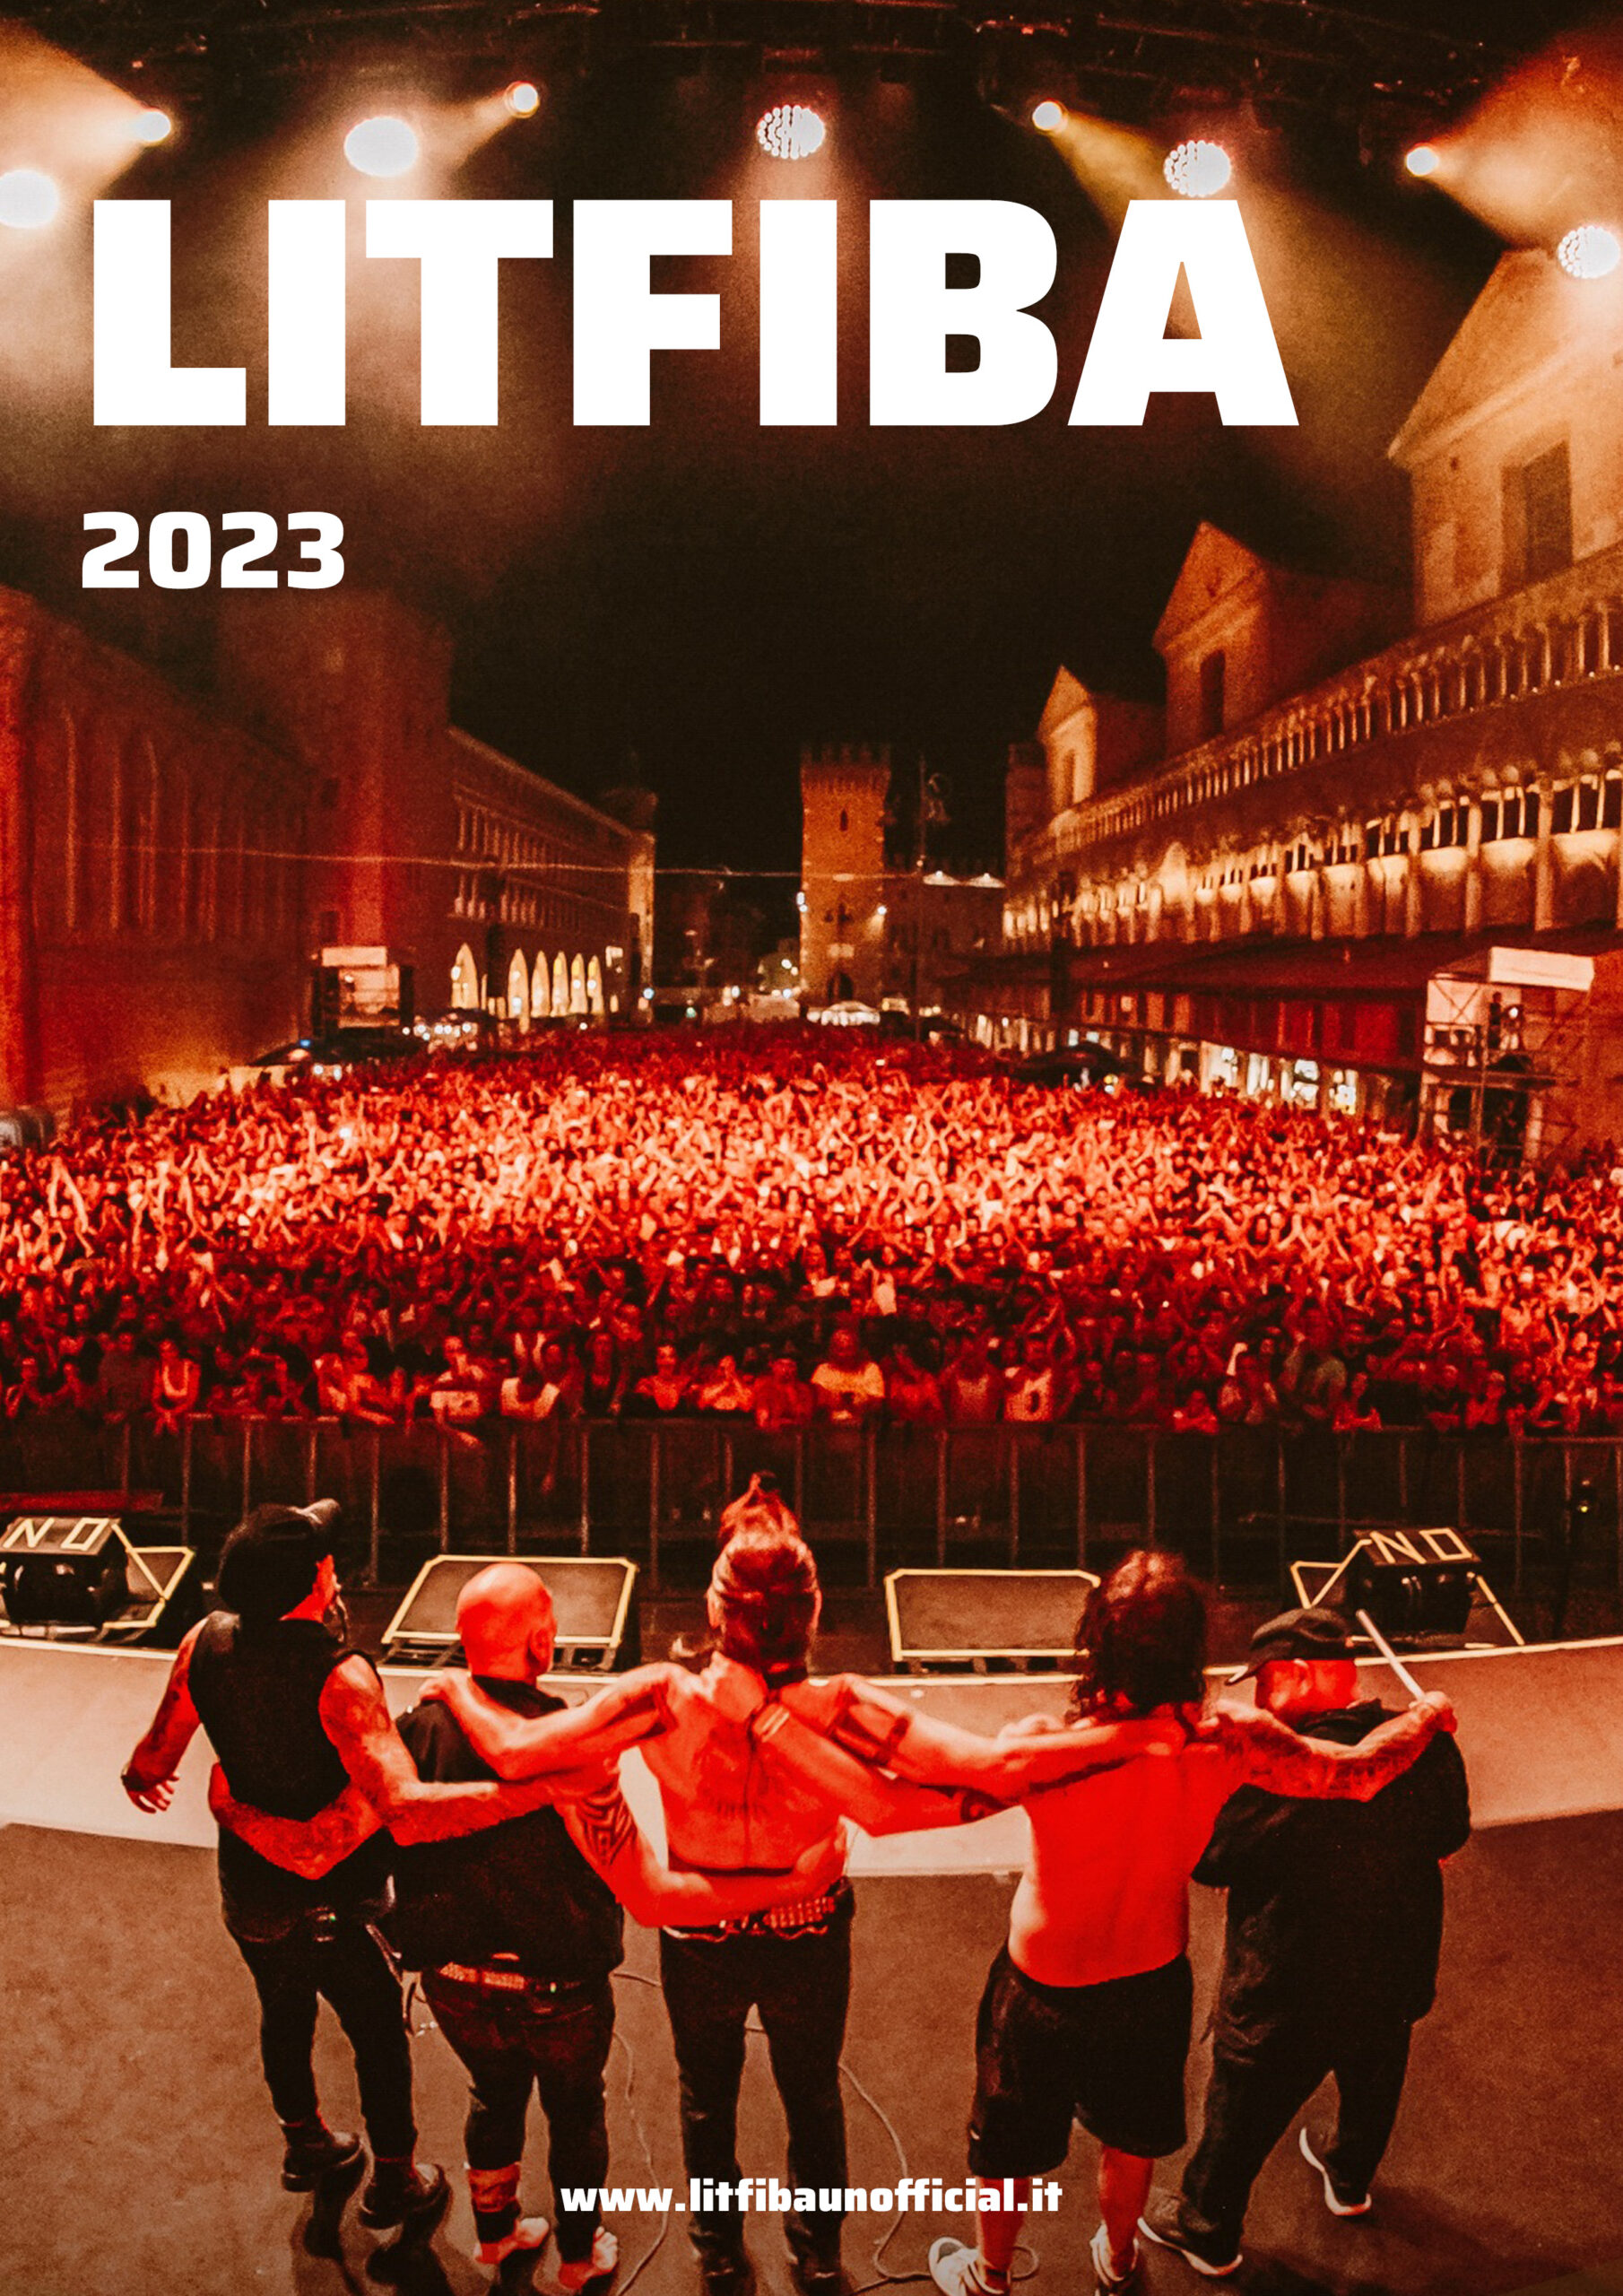 Calendario Litfiba 2023 - litfibaunofficial.it